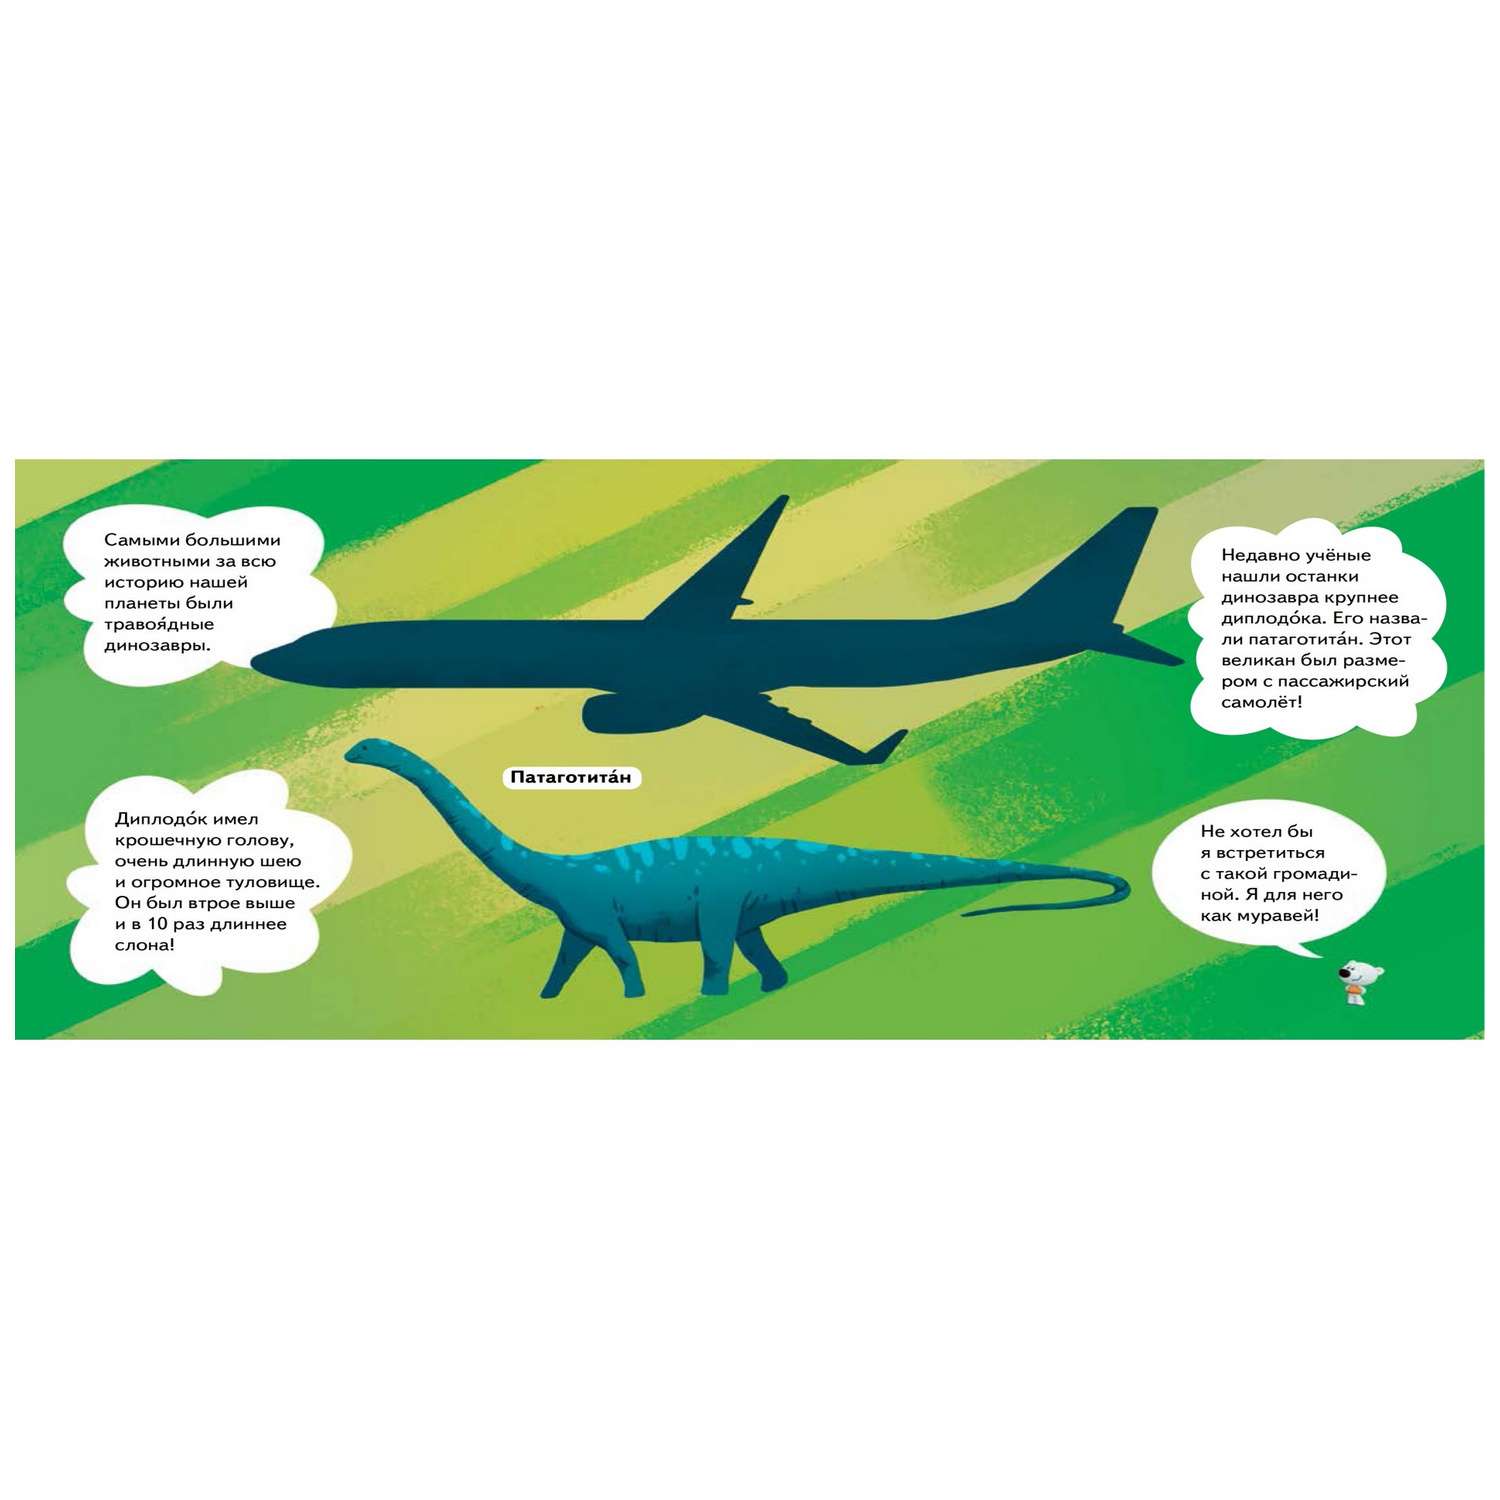 Книга ПИТЕР Ми-ми-мишки Динозавры Какой динозавр считался королём какой был больше самолёта и почему они исчезли - фото 3